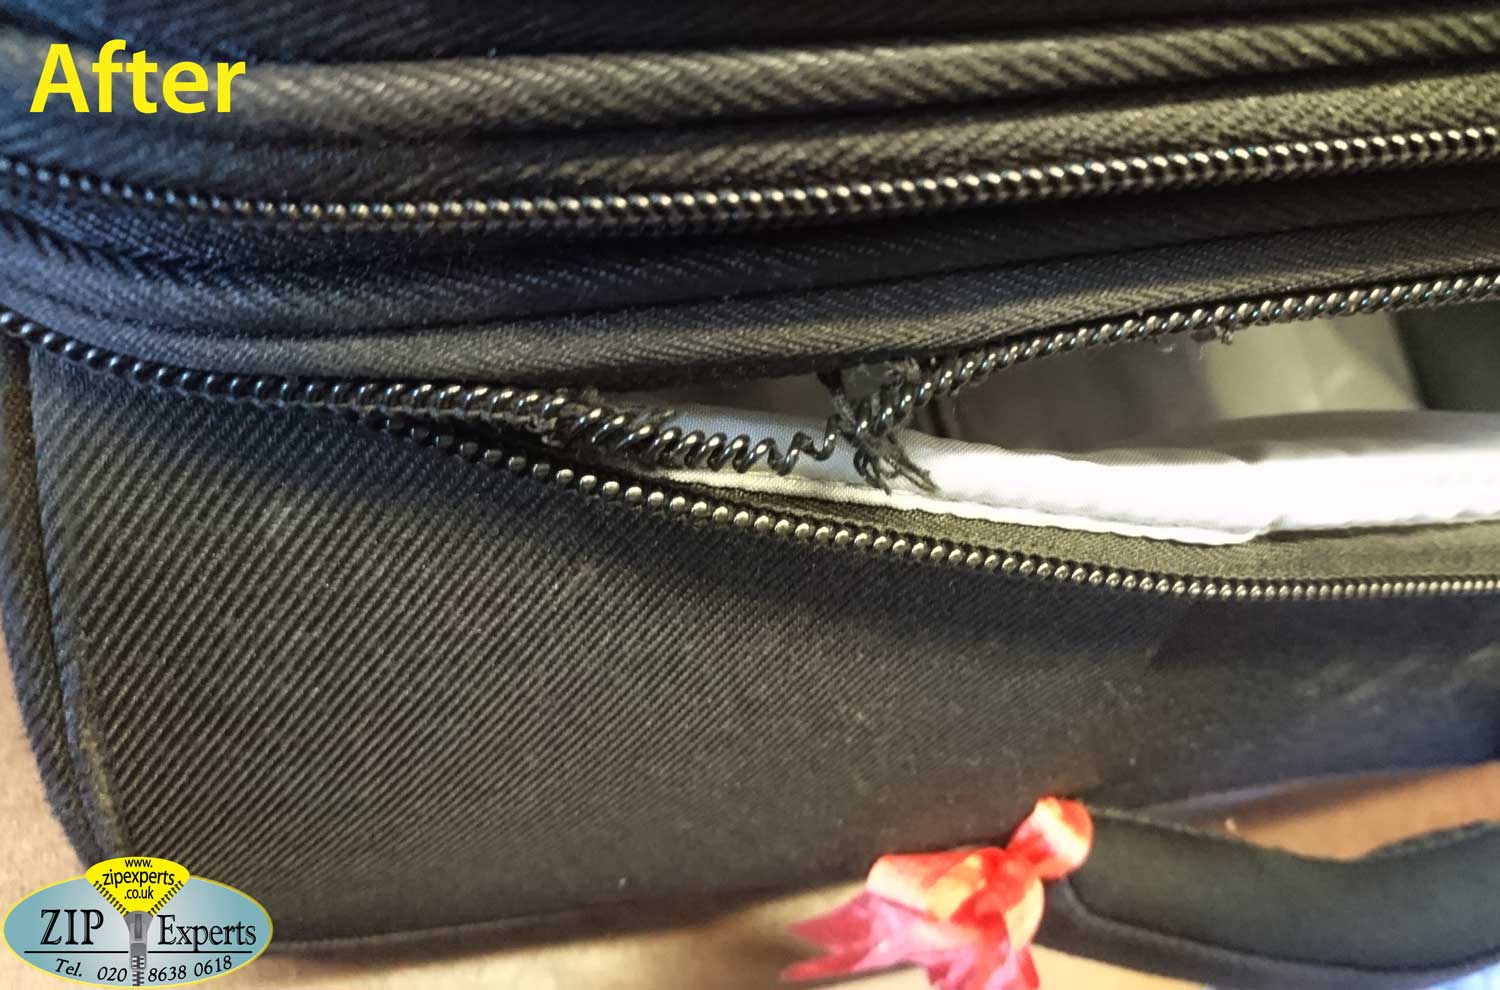 DIPLOMAT suitcase – main zip repair – Zip Experts